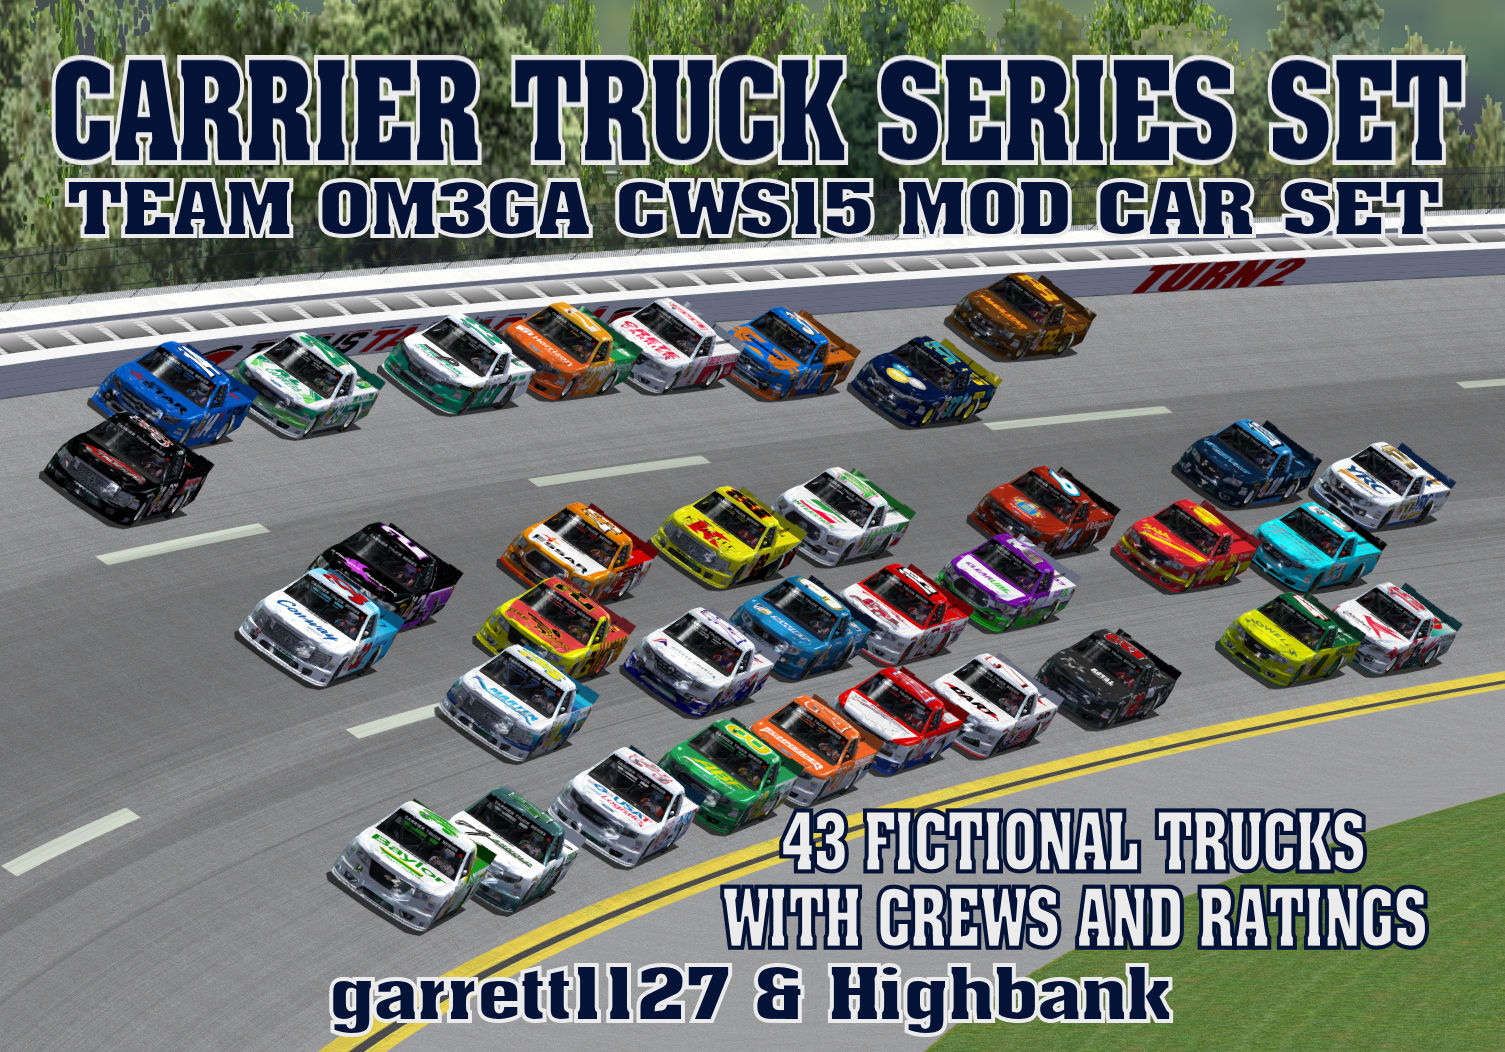 Carrier Truck Series Set.jpg